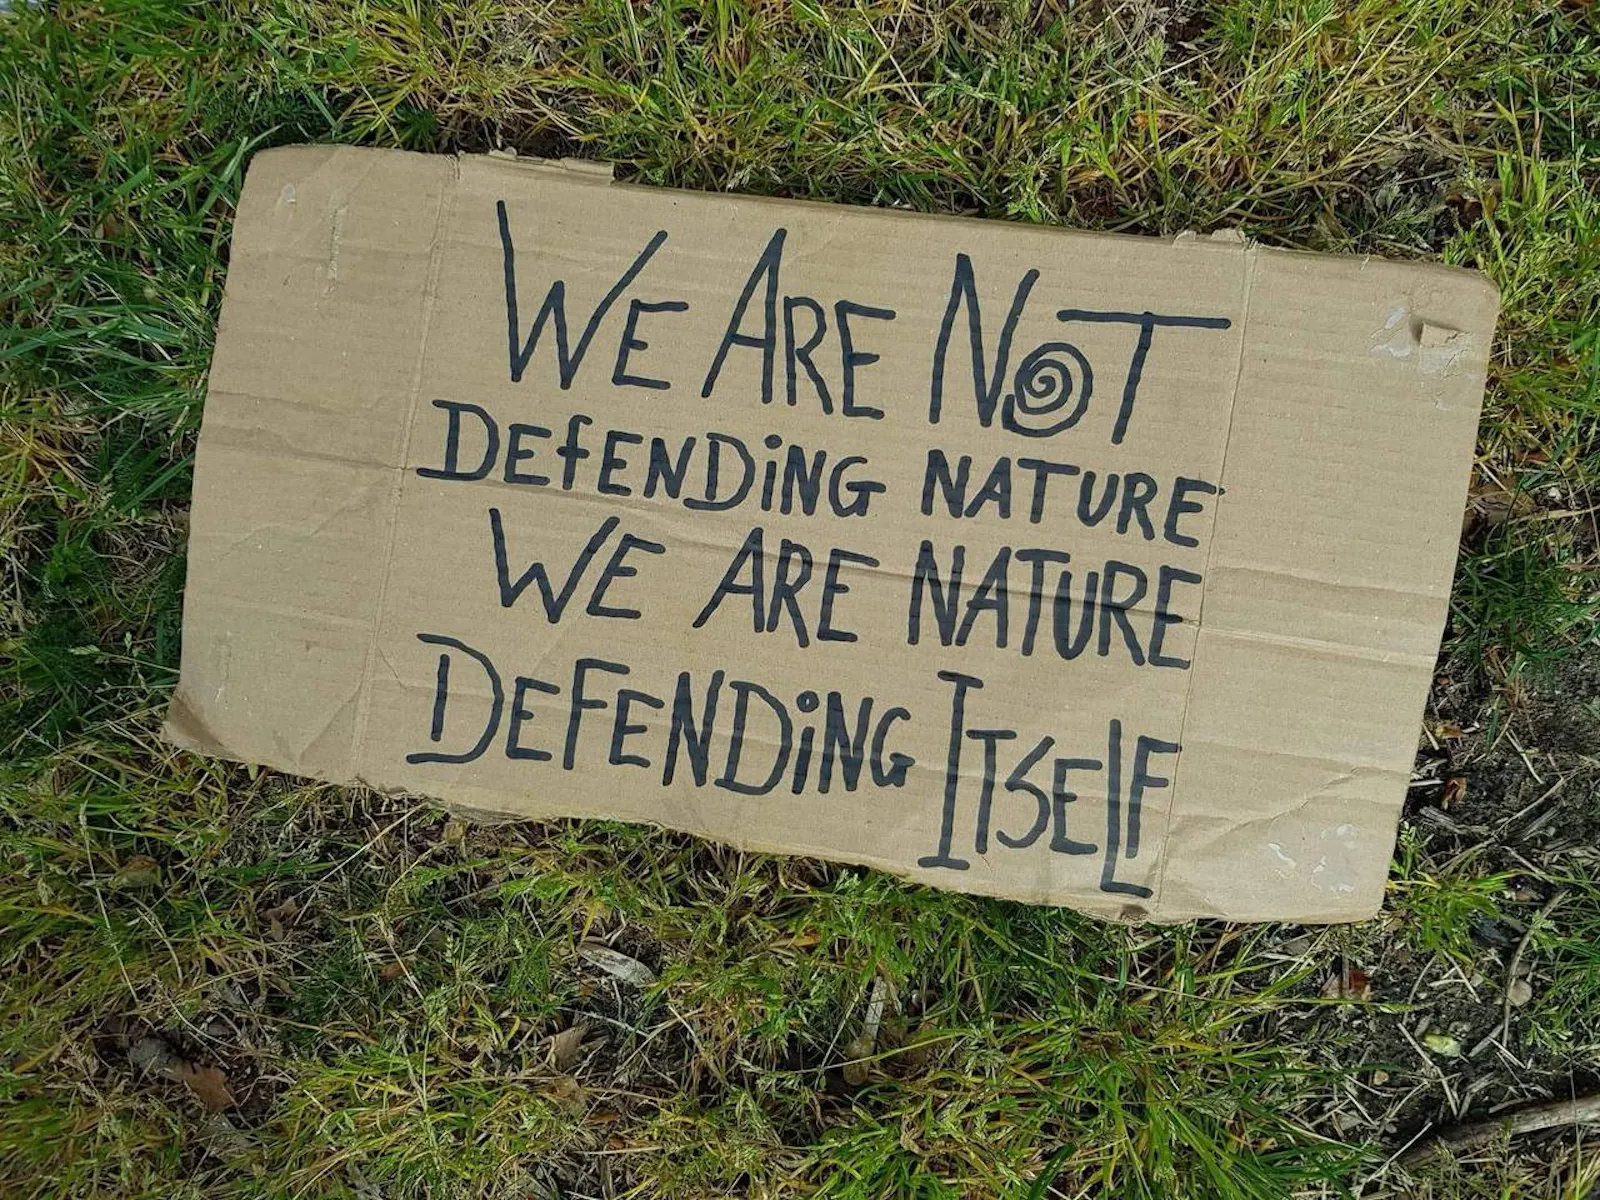 Pappschild im Gras mit der Aufschrift "We are not defending nature, we are nature defending itself"